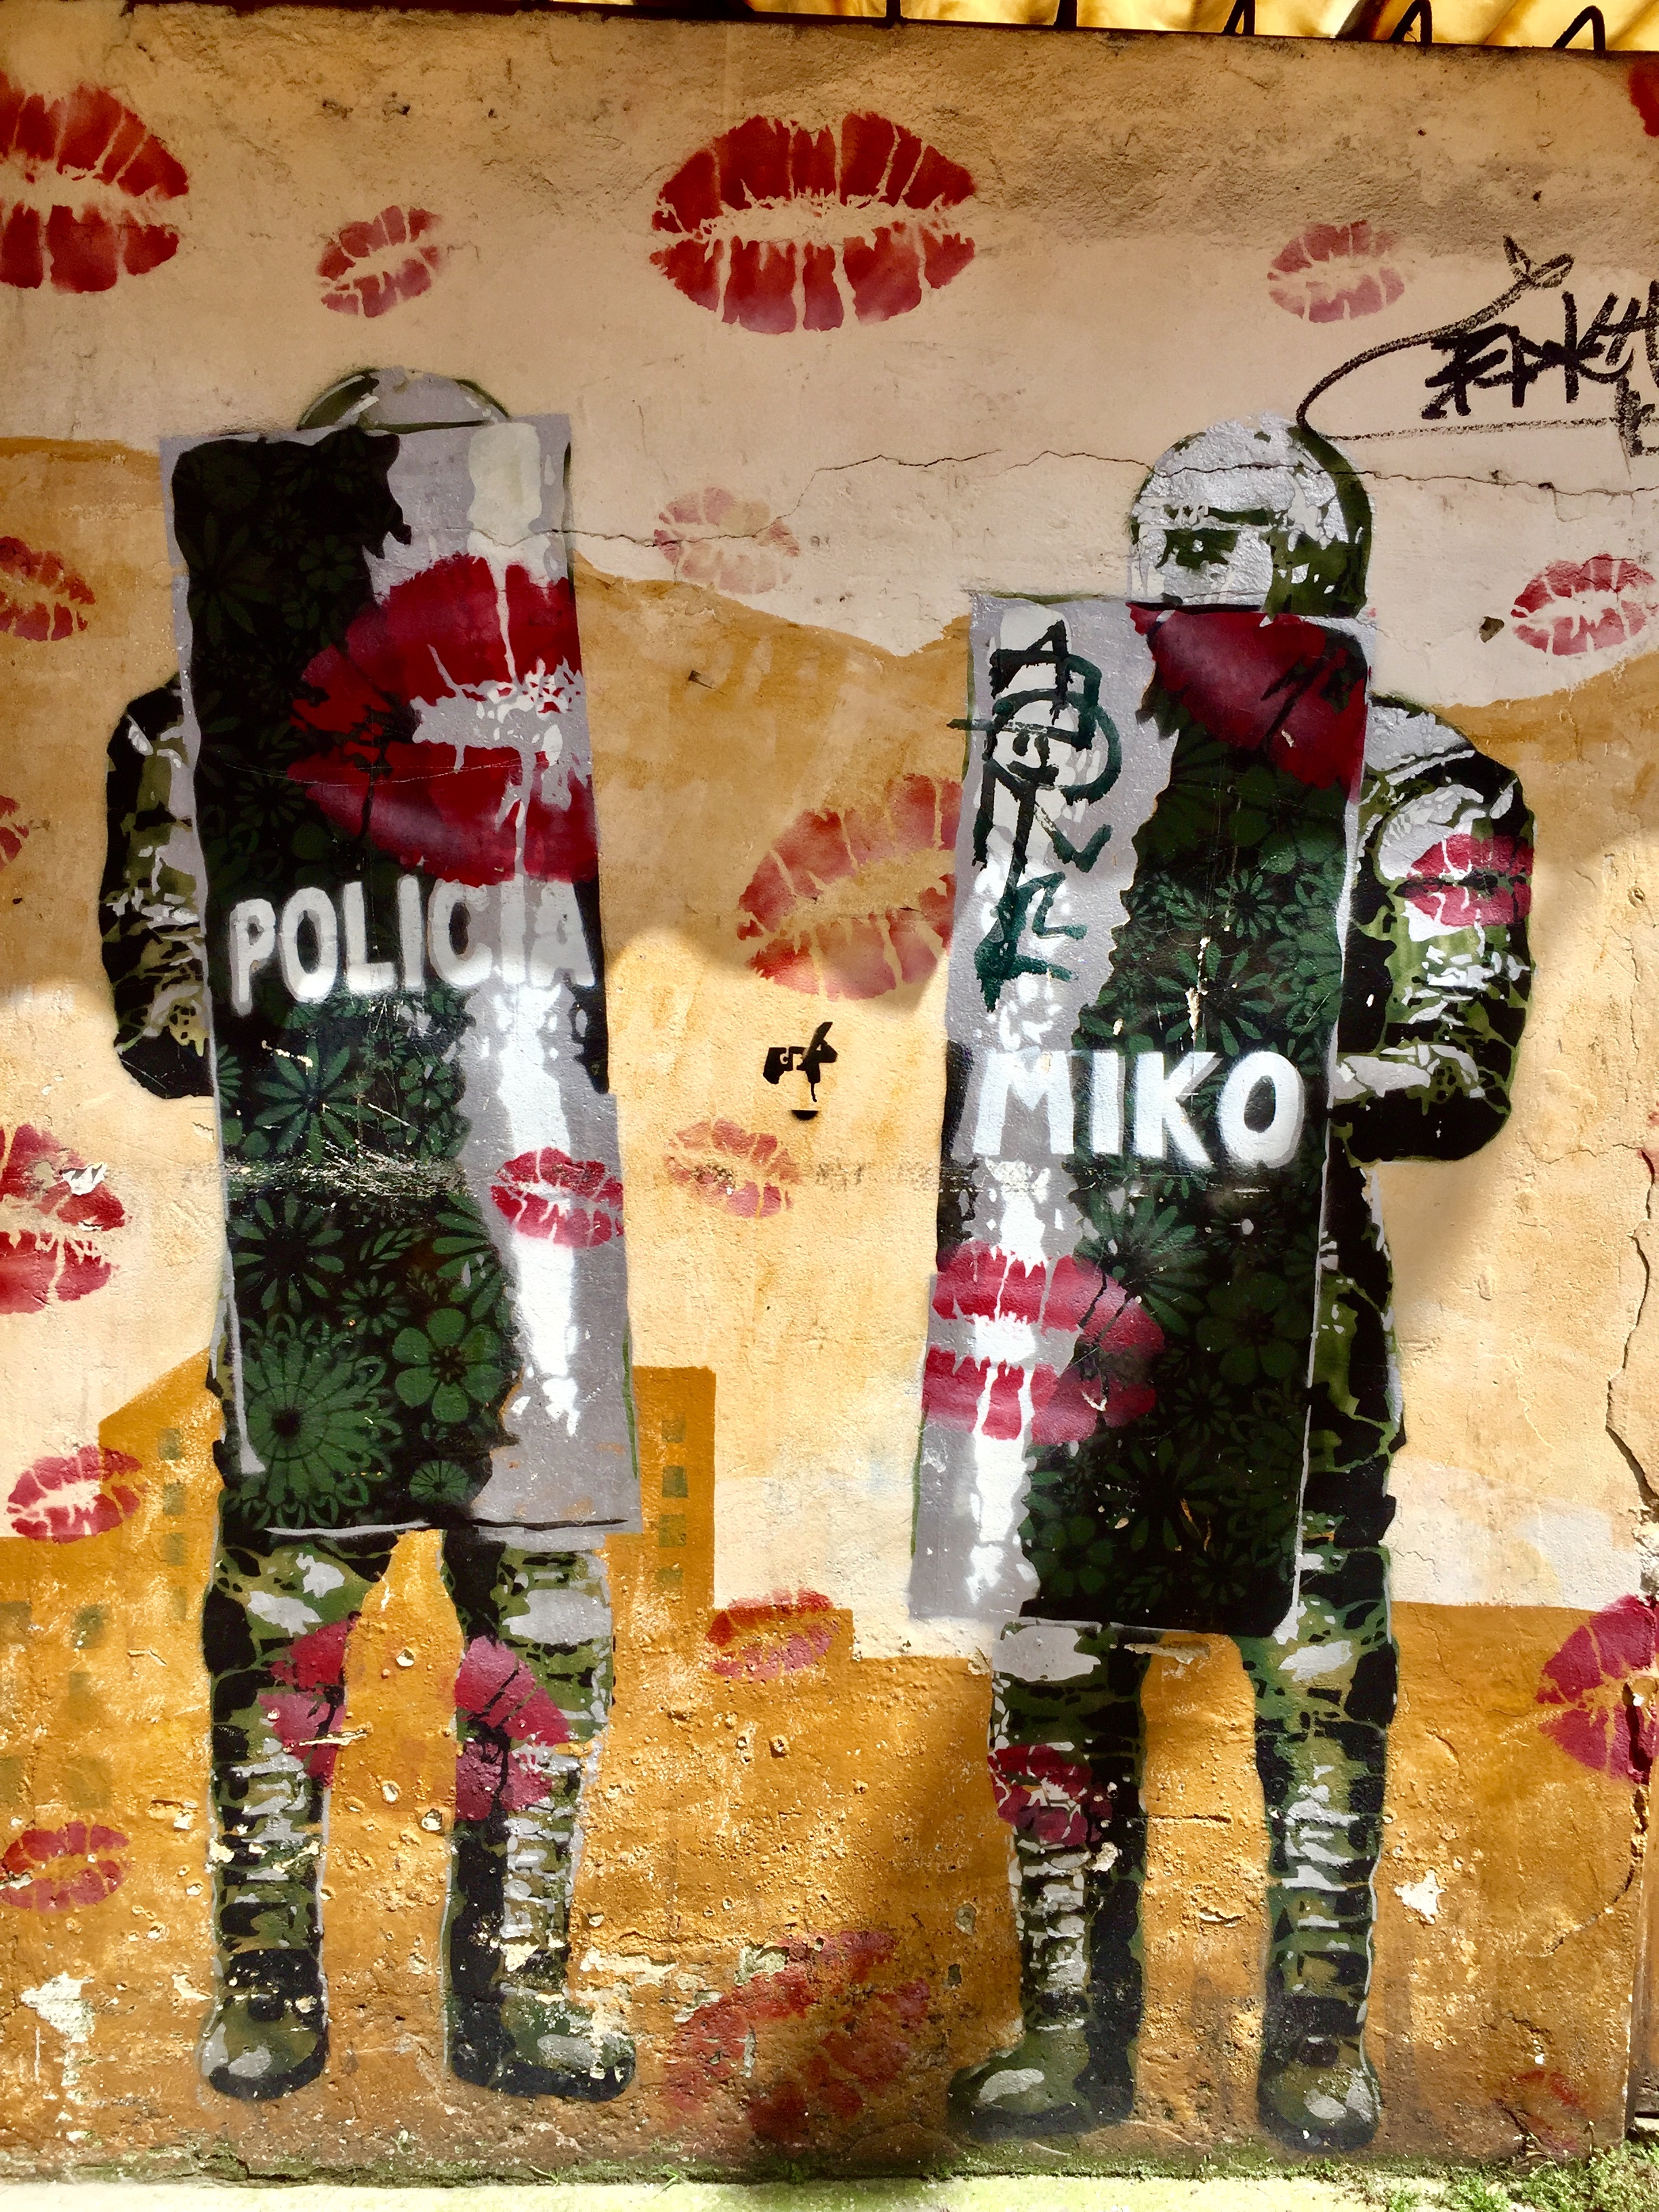 Miko&mdash;Kisses & cops - Besos & policías 